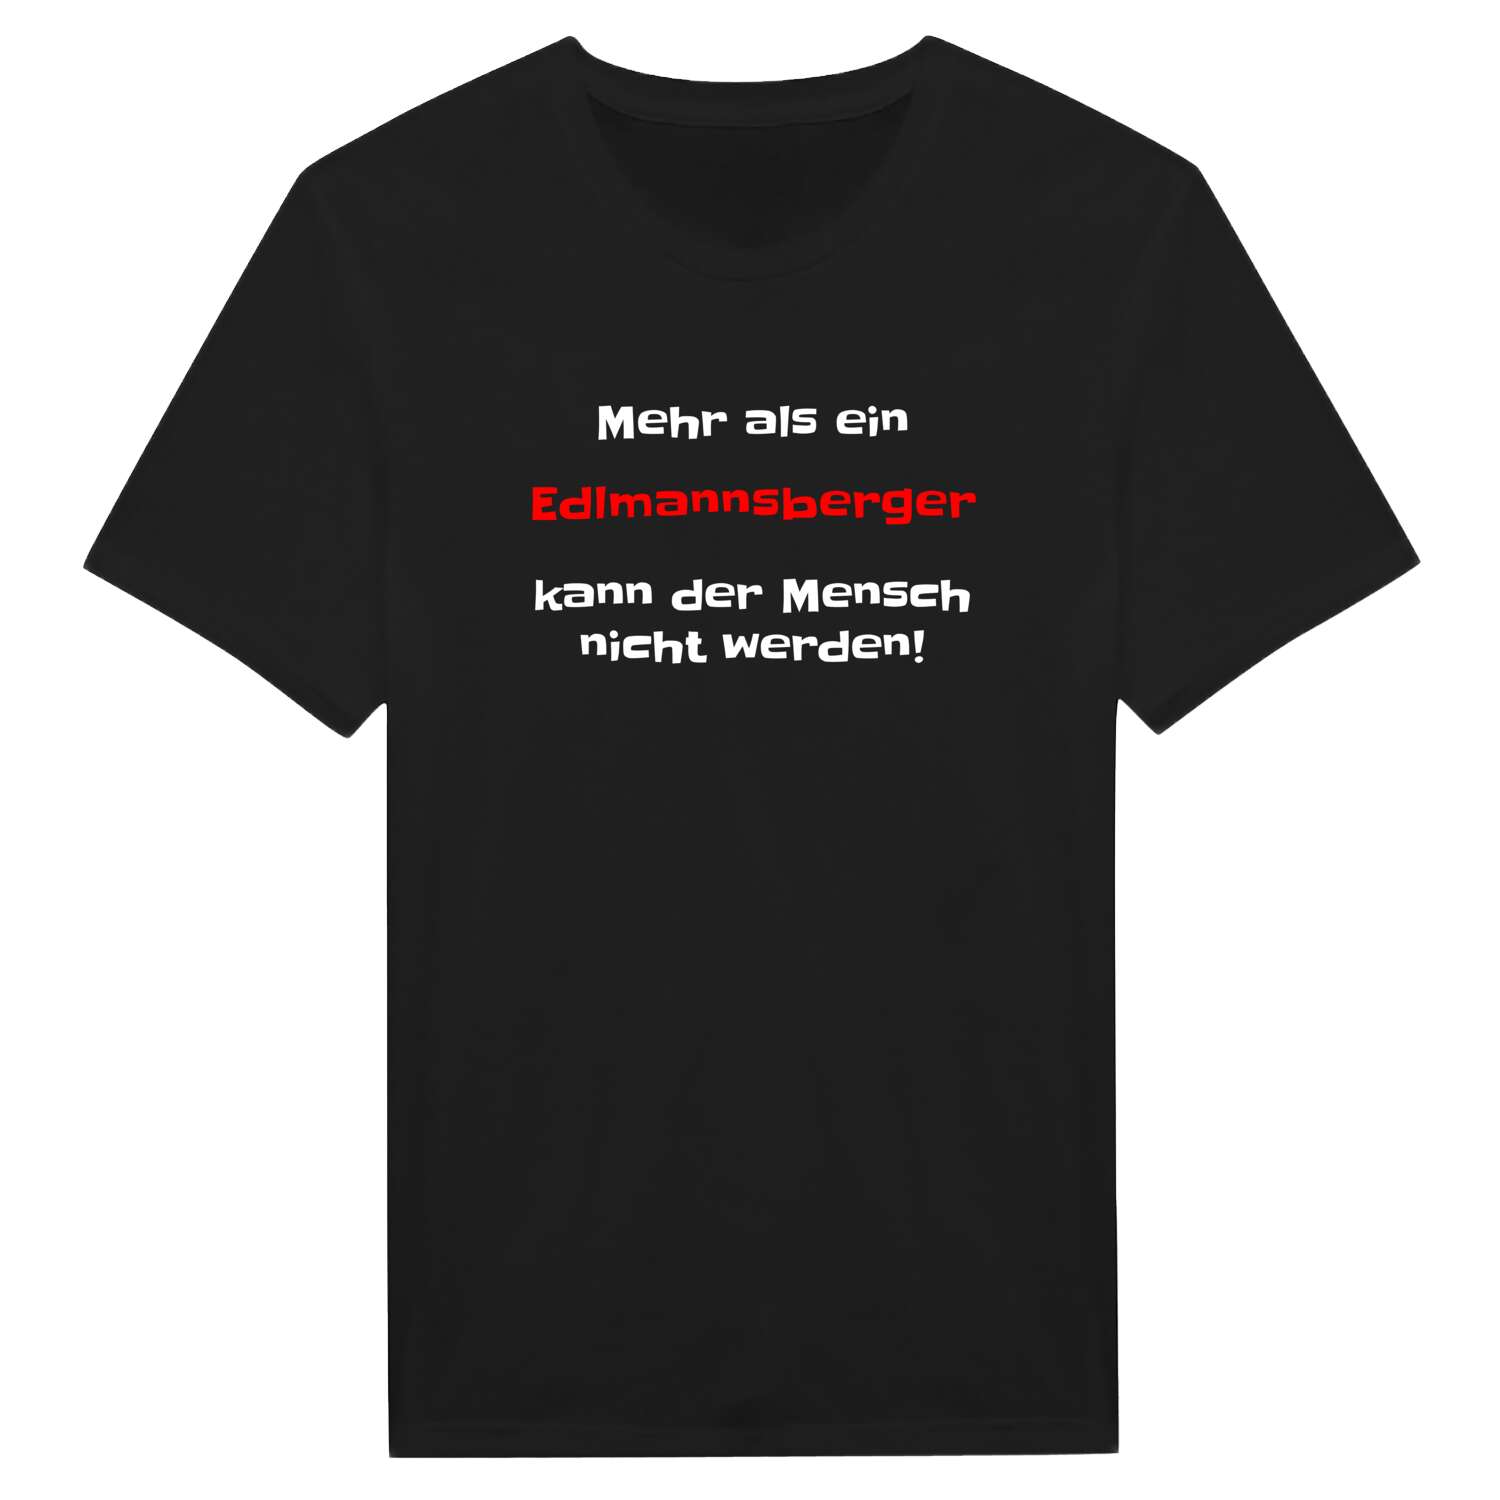 Edlmannsberg T-Shirt »Mehr als ein«